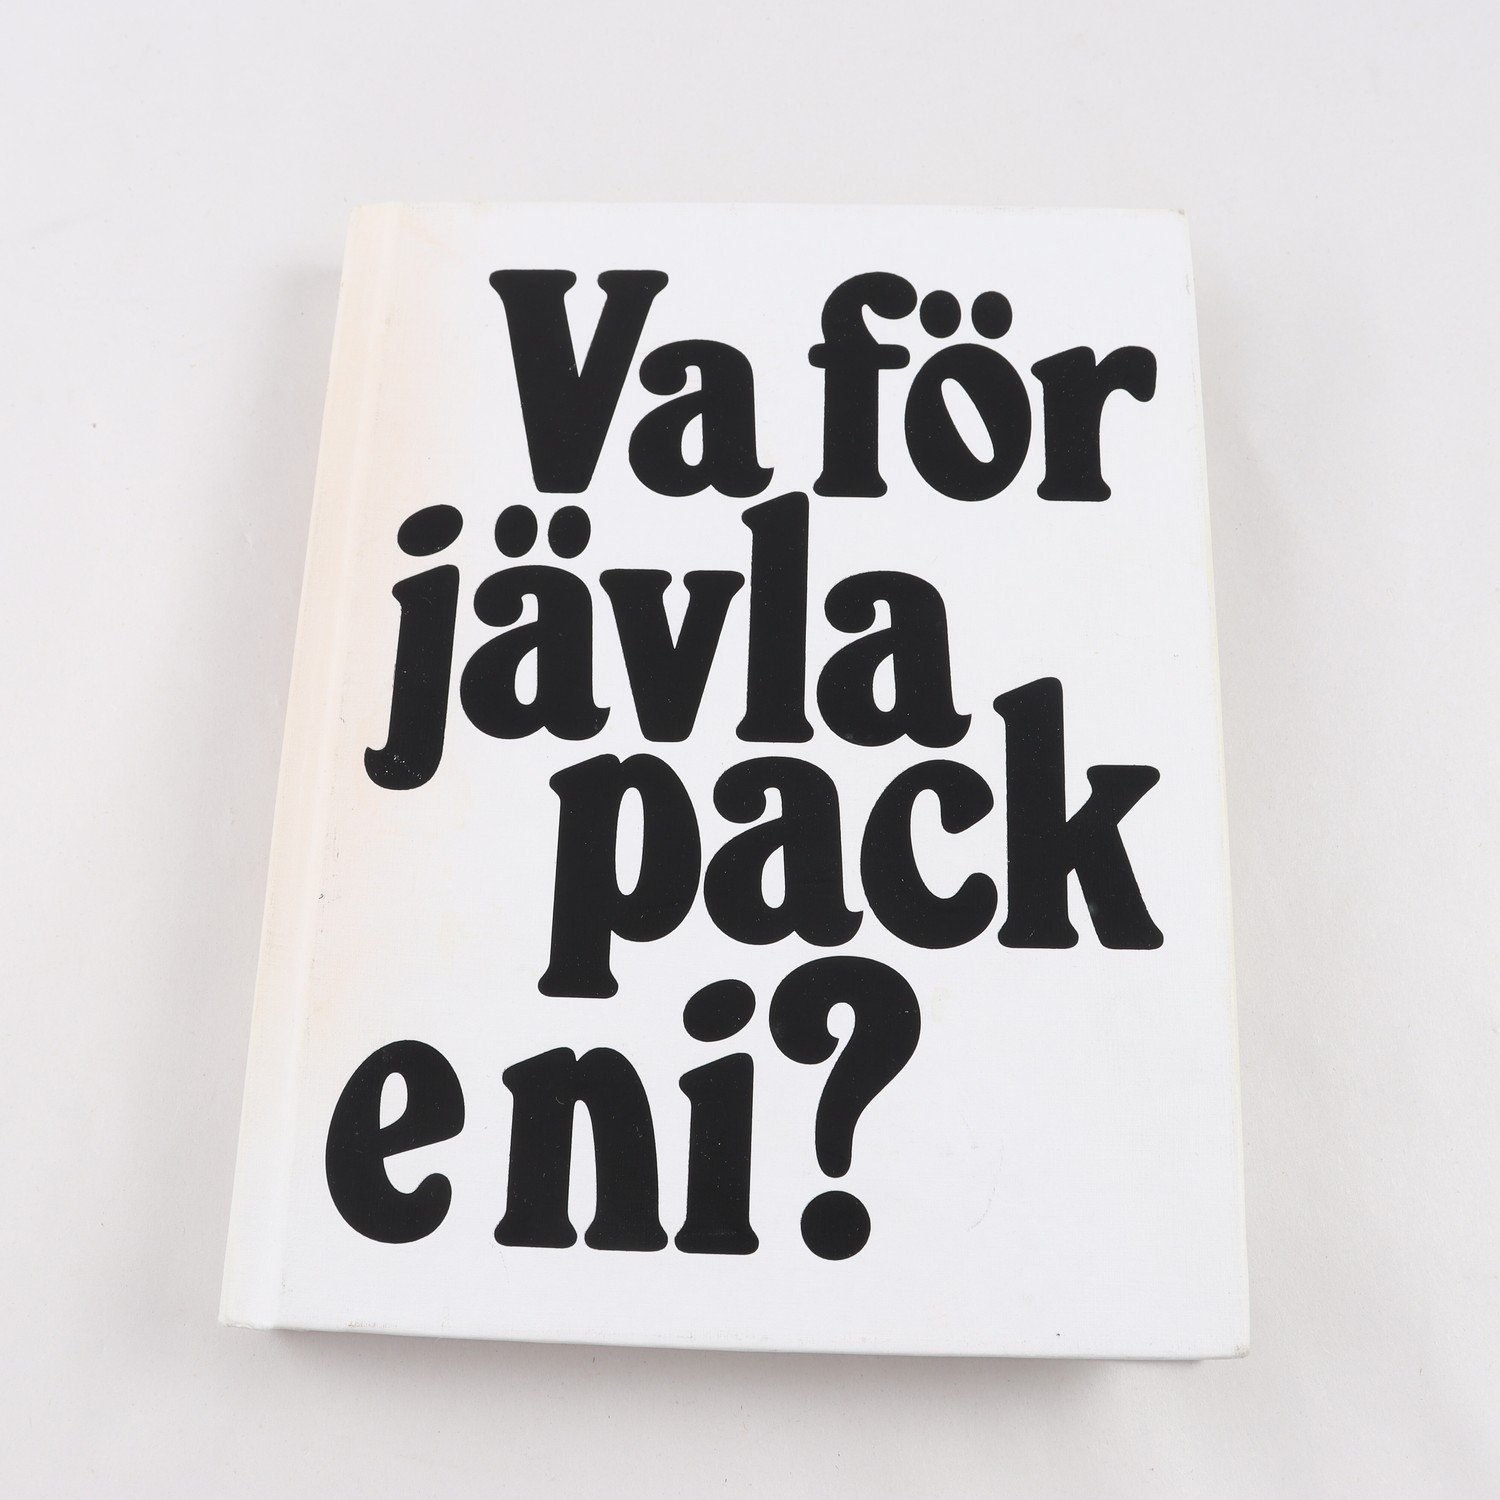 Va för jävla pack e ni? – Berättelsen om Stockholms fotbollsklackar